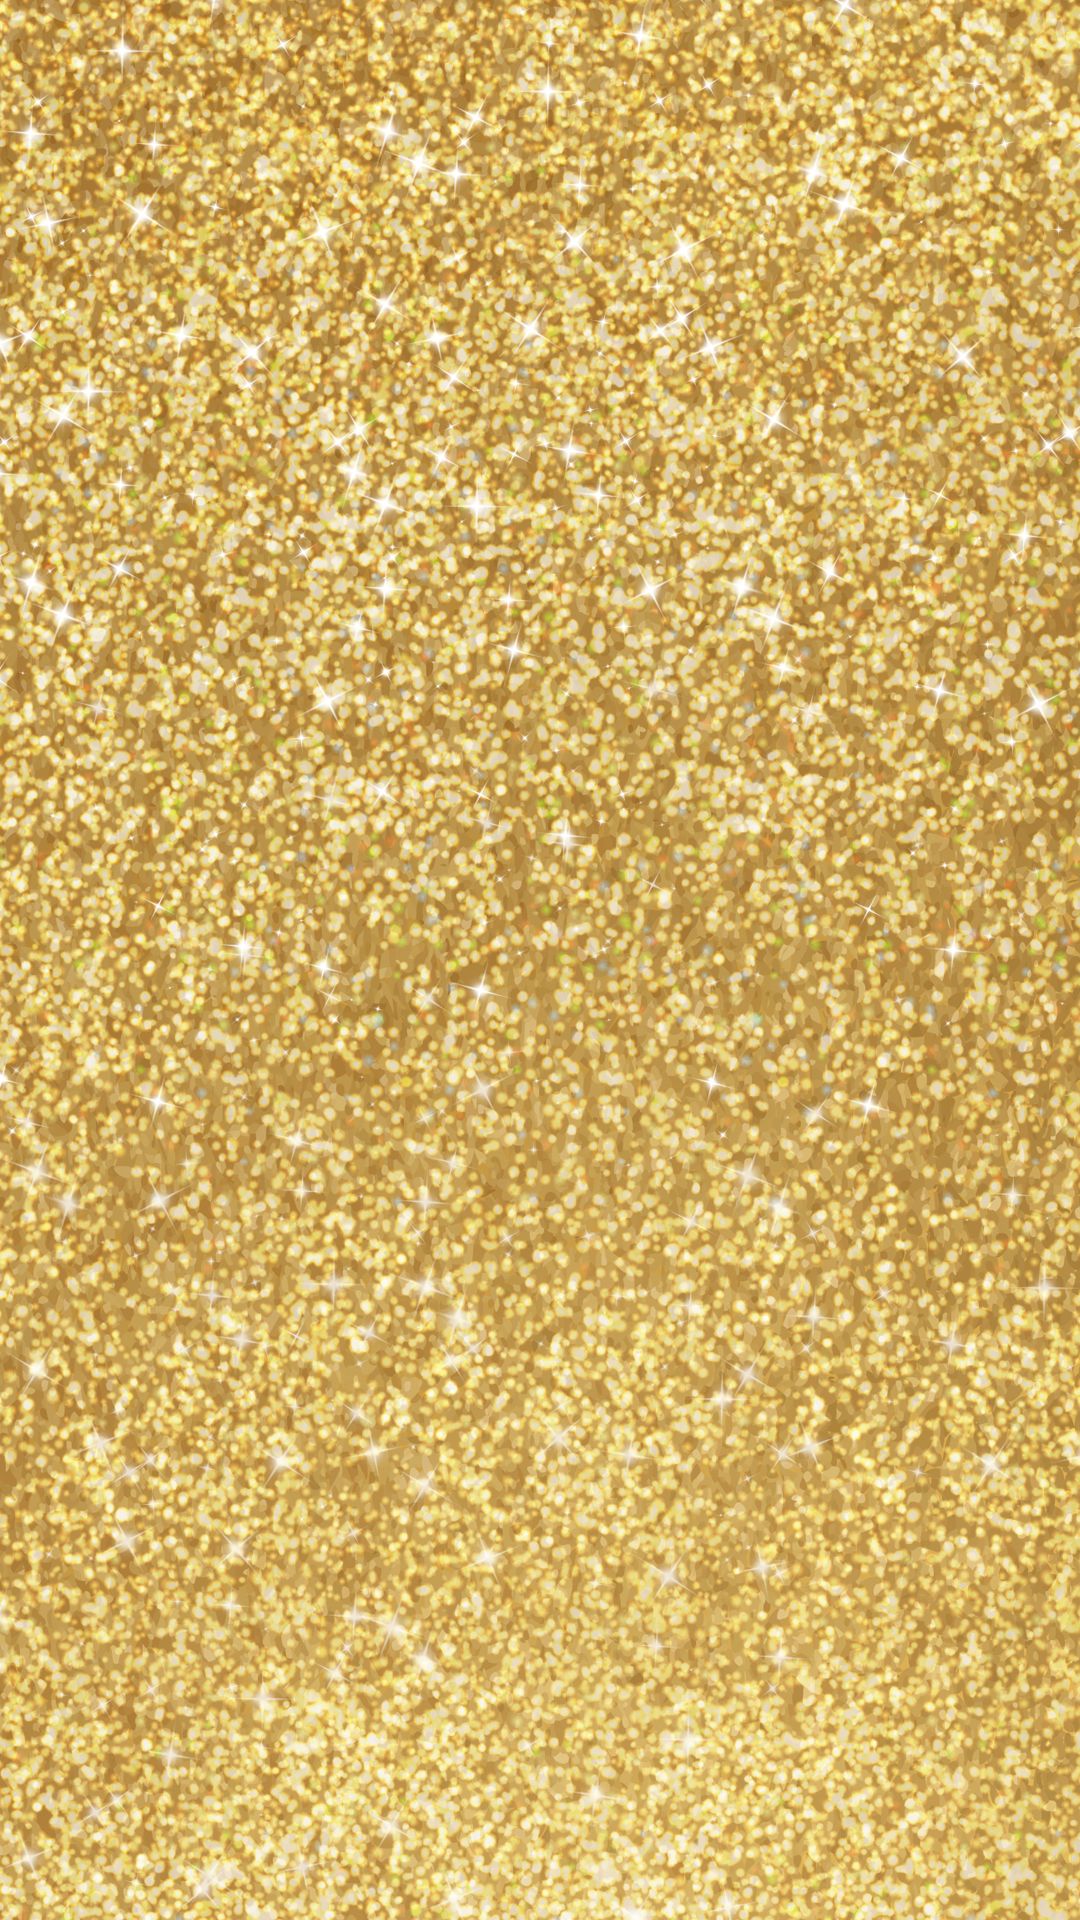 Những chi tiết phủ vàng như ánh sao lấp lánh luôn là một chủ đề mang tính thị giác đầy thu hút. Với những hình ảnh phủ vàng tinh tế và đầy quyến rũ, bạn sẽ cảm thấy những cảm xúc độc đáo và tinh tế. Hãy cùng khám phá những hình ảnh về phủ vàng lấp lánh này và bộ sưu tập hàng đầu của chúng tôi ngay bây giờ!